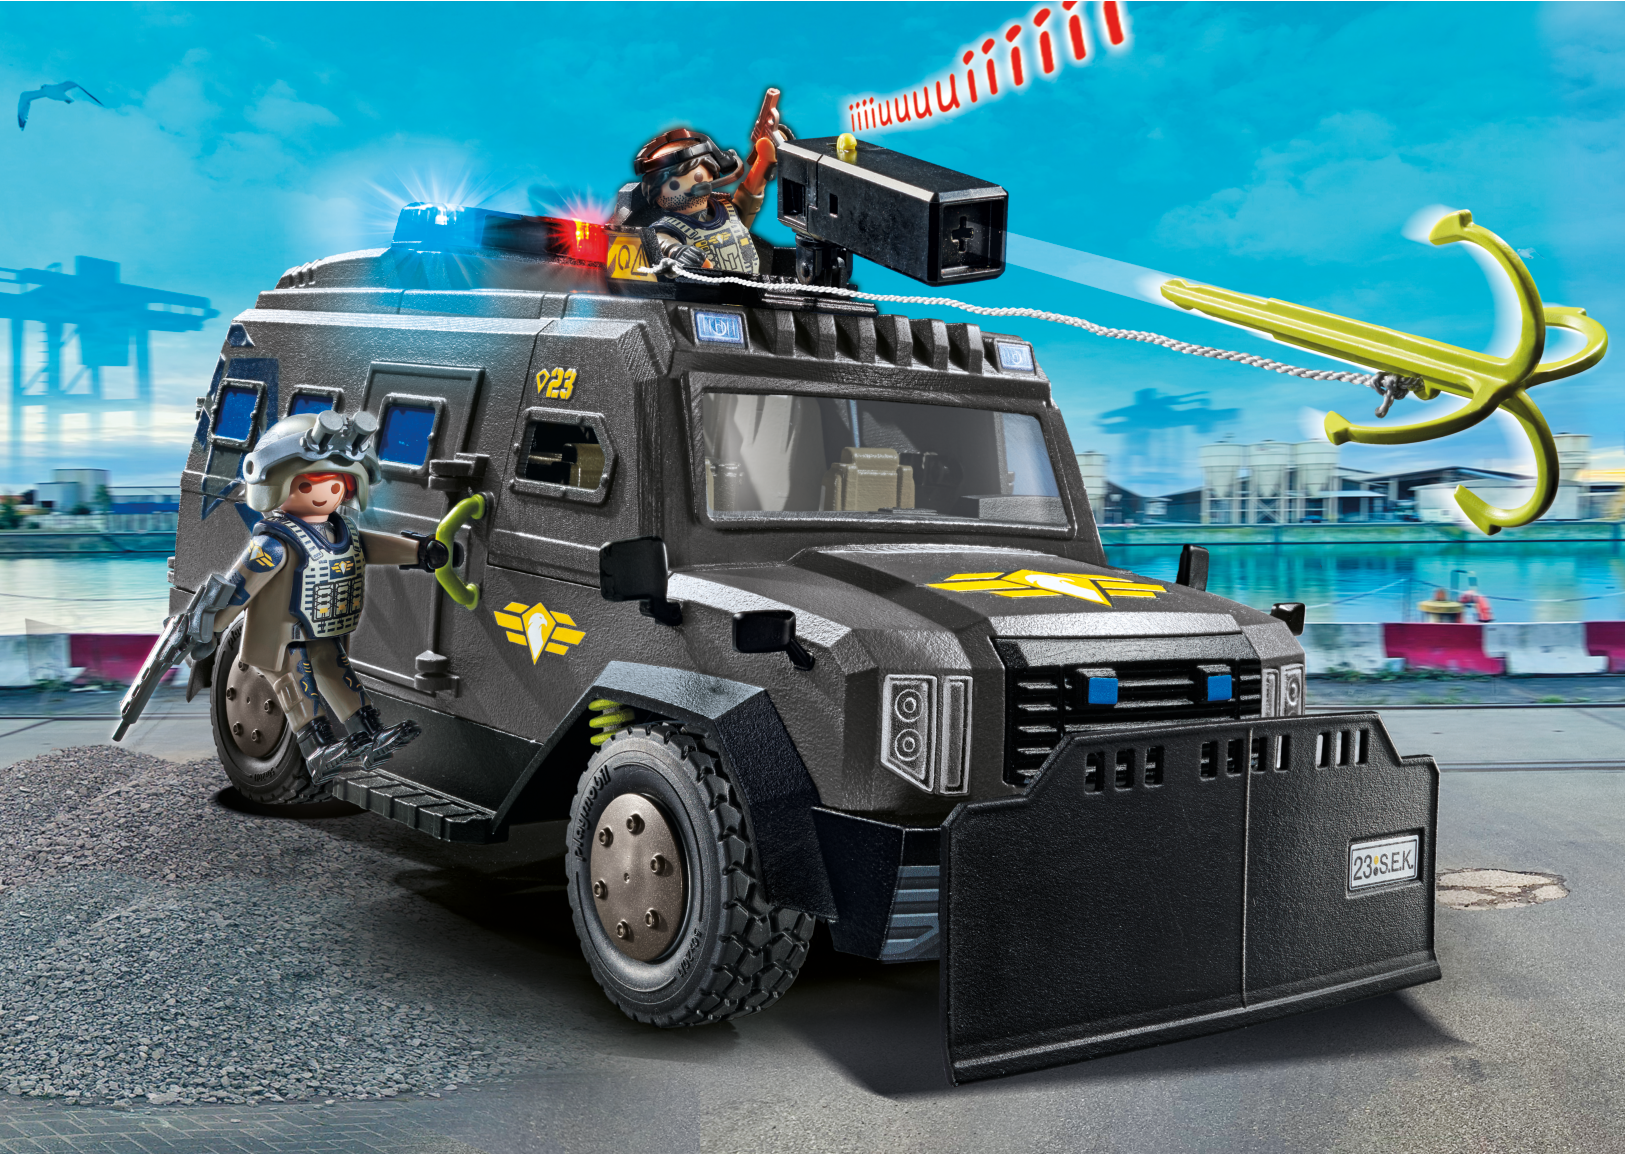 Playmobil 71144 unita' speciale - veicolo blindato per bambini da 5 anni - Playmobil